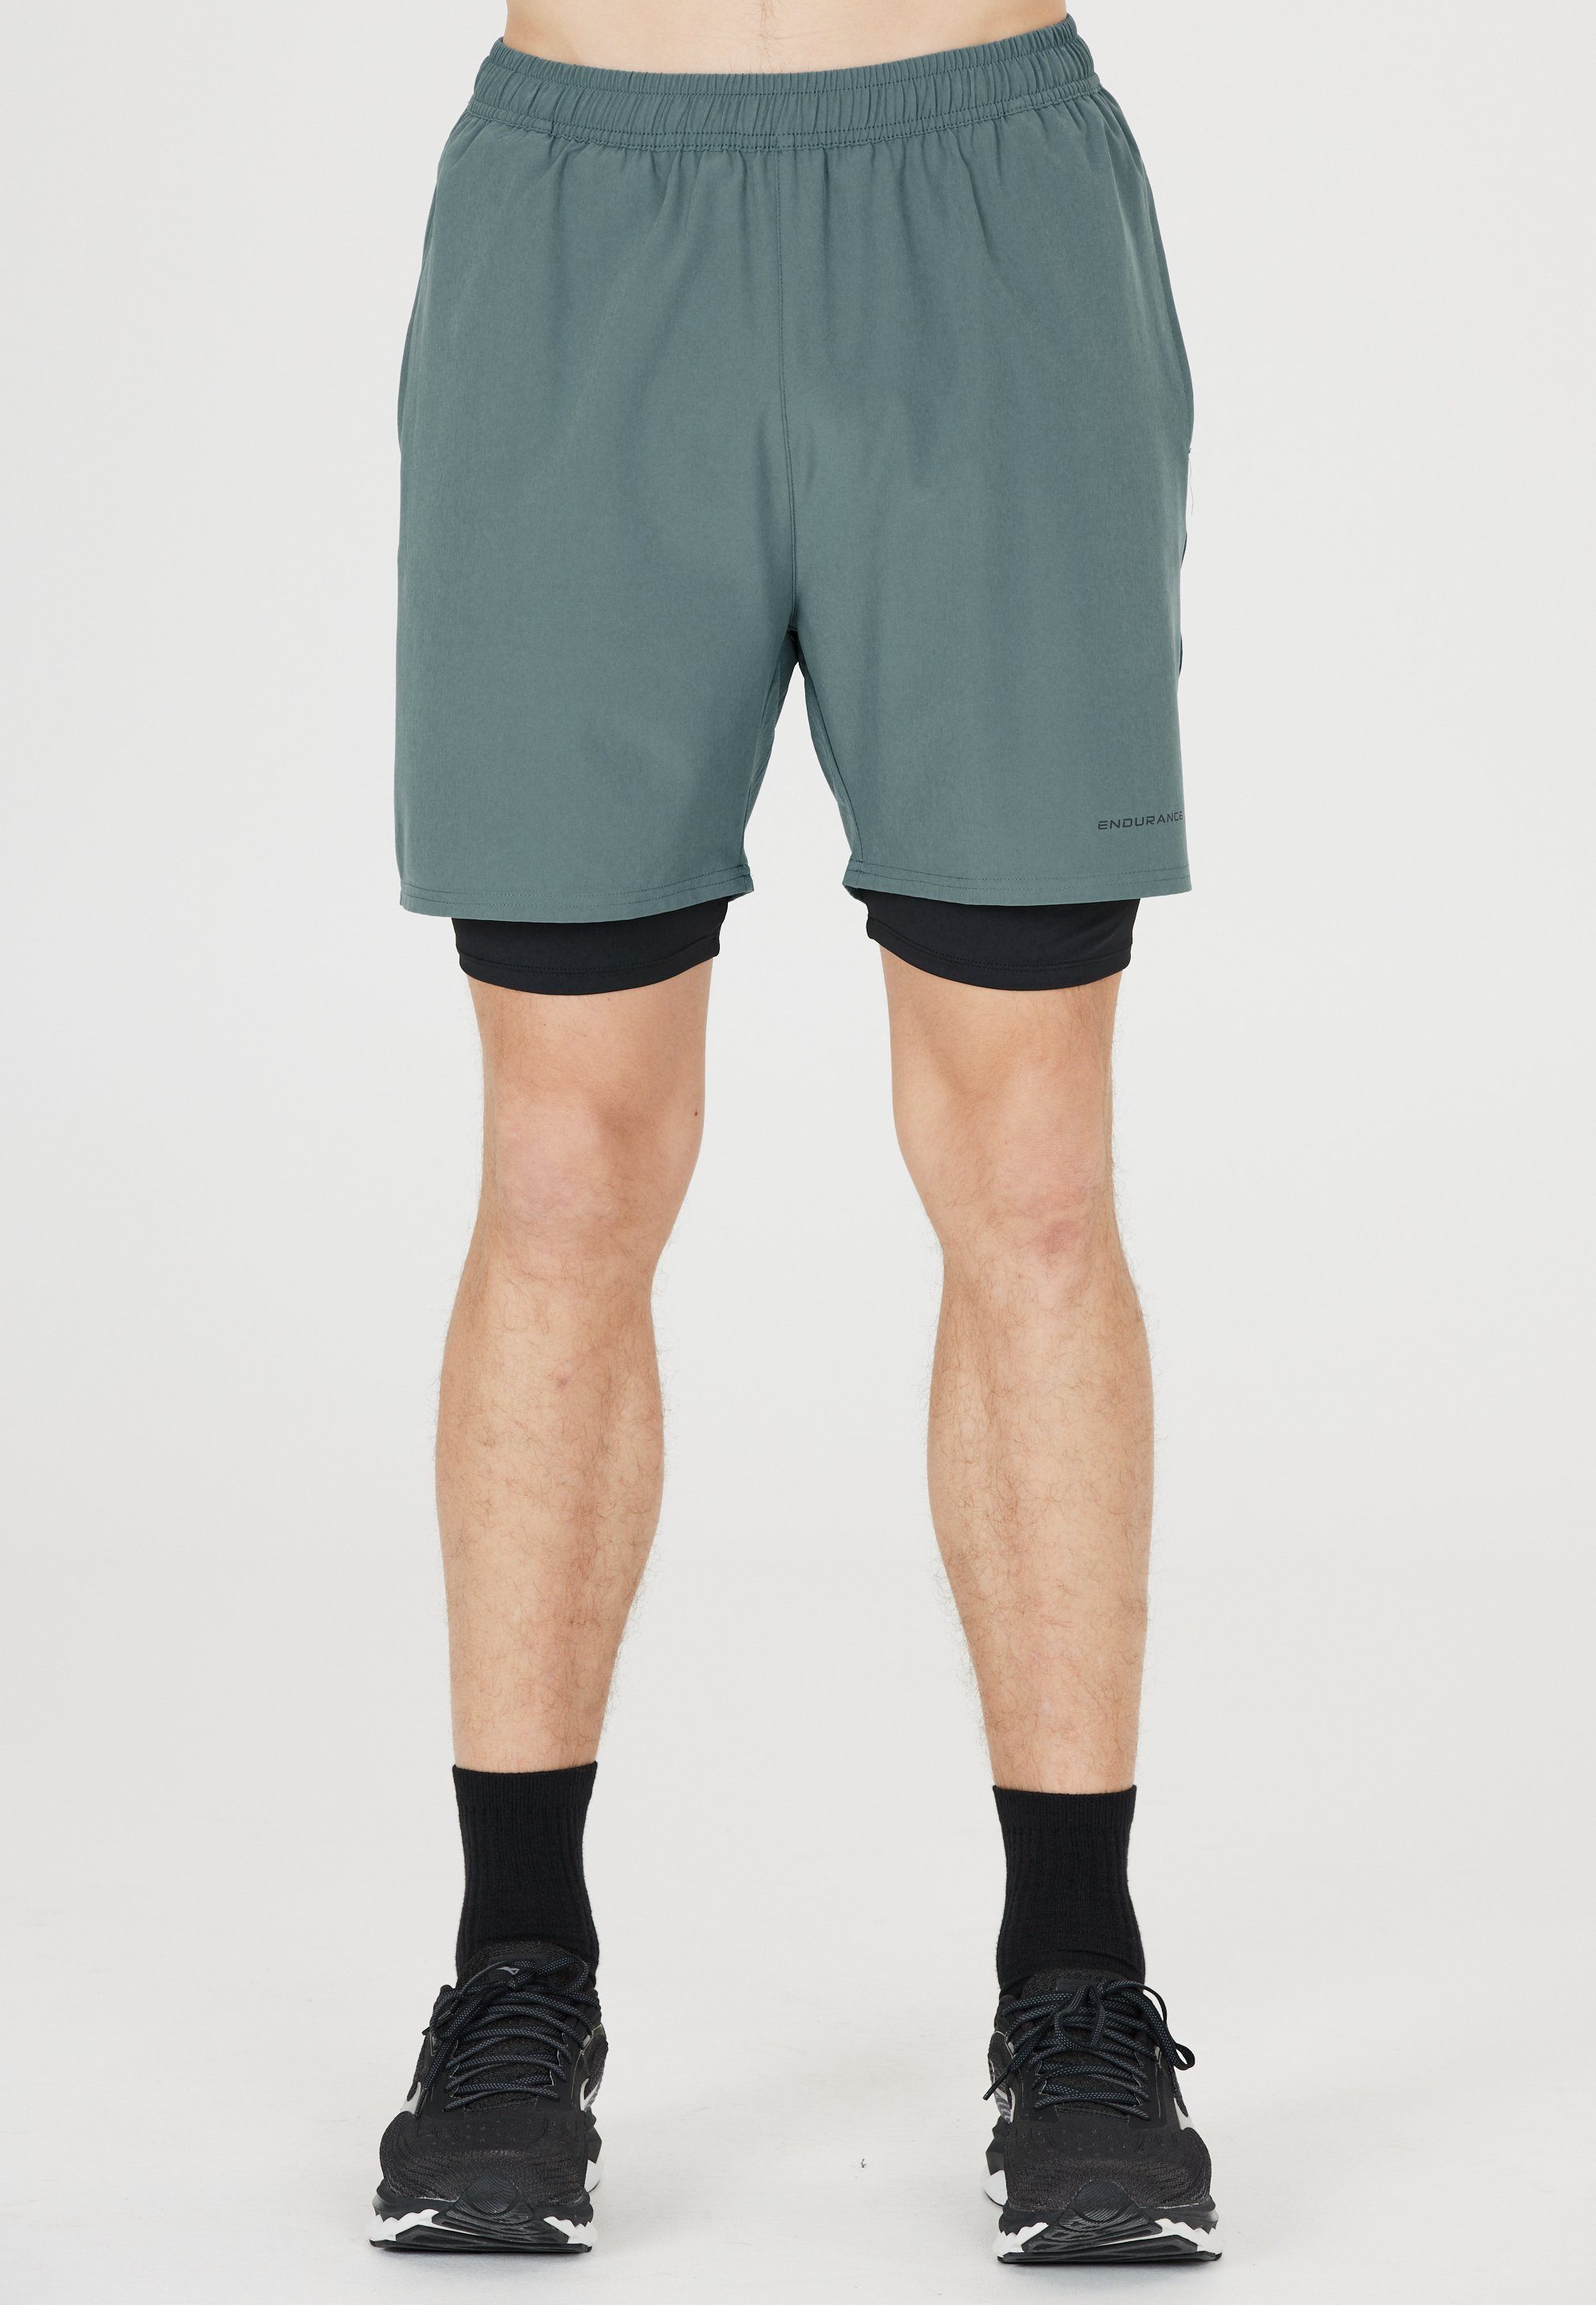 mit und olivgrün-schwarz Quick Shorts Kros ENDURANCE Im Dry Stretch-Funktion 2-in-1-Design